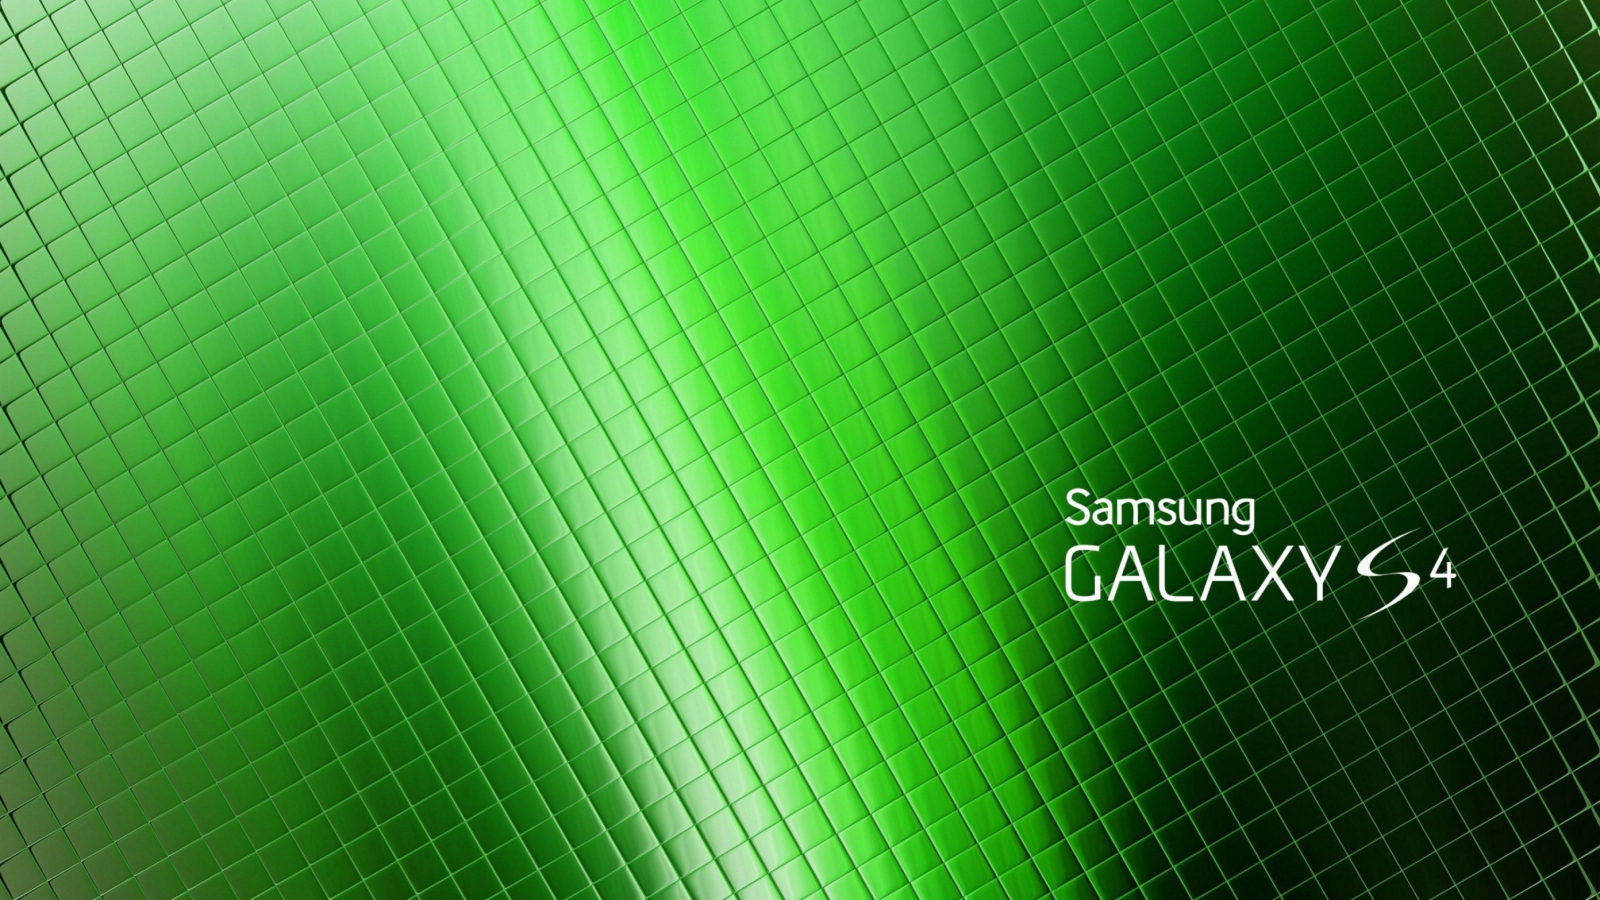 Galaxy S4 wallpaper 1600x900